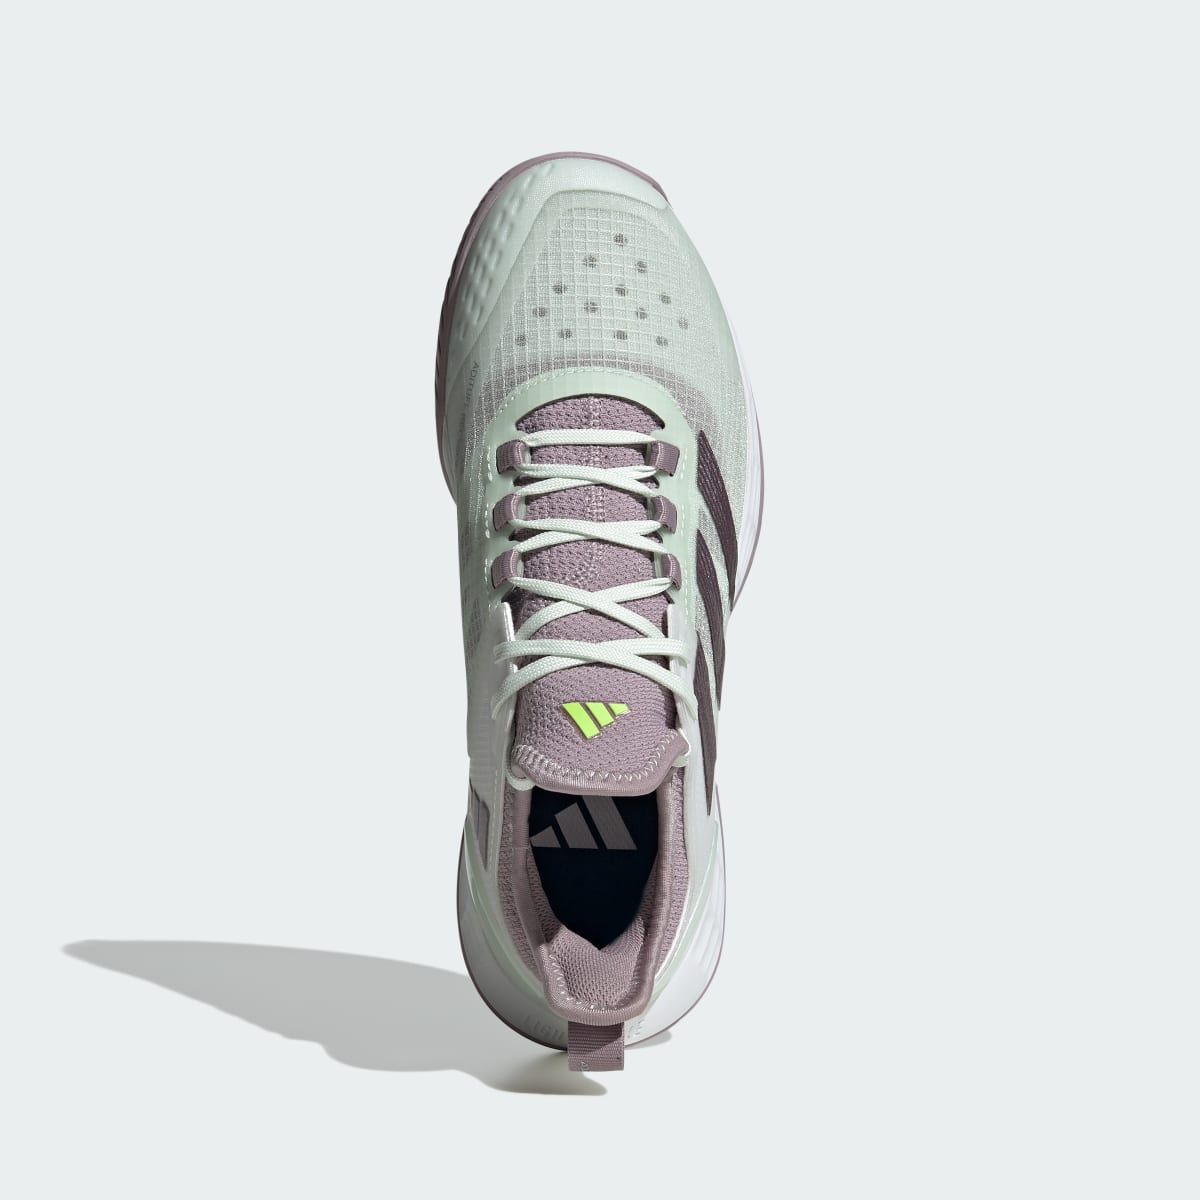 Adidas Adizero Ubersonic 4.1 Tennis Shoes. 6